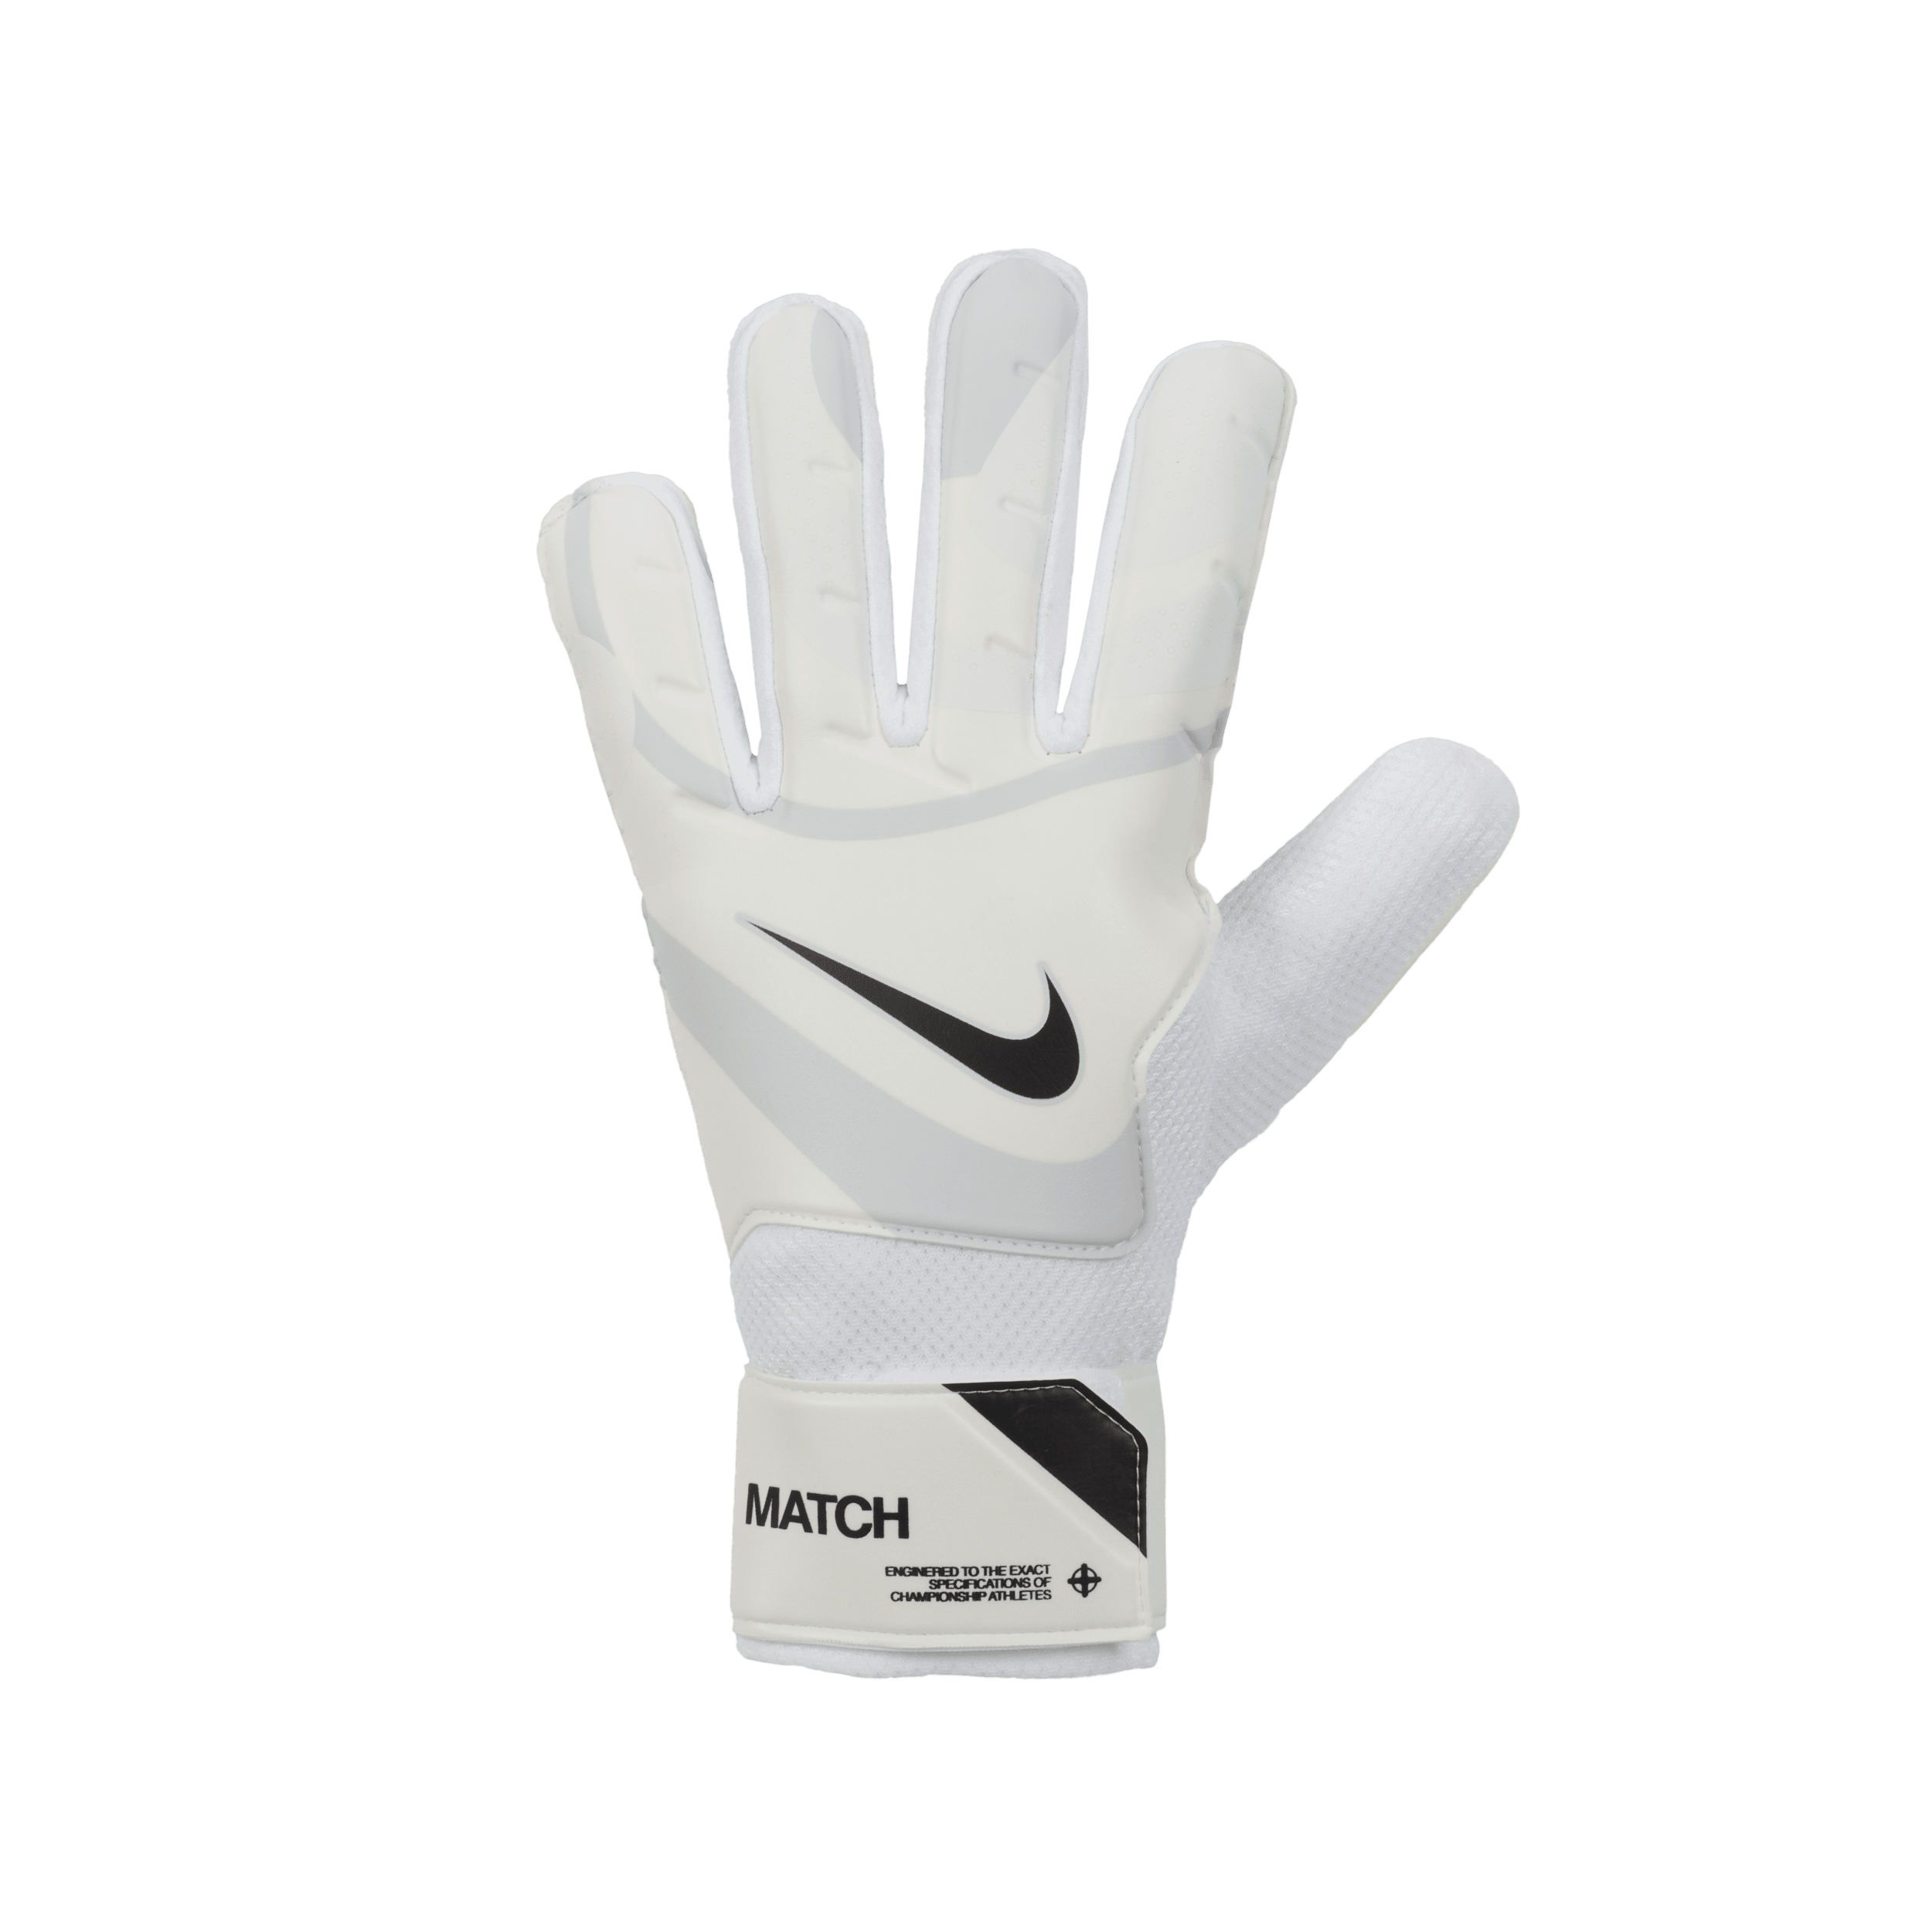 Nike Match-målmandshandsker til fodbold - hvid